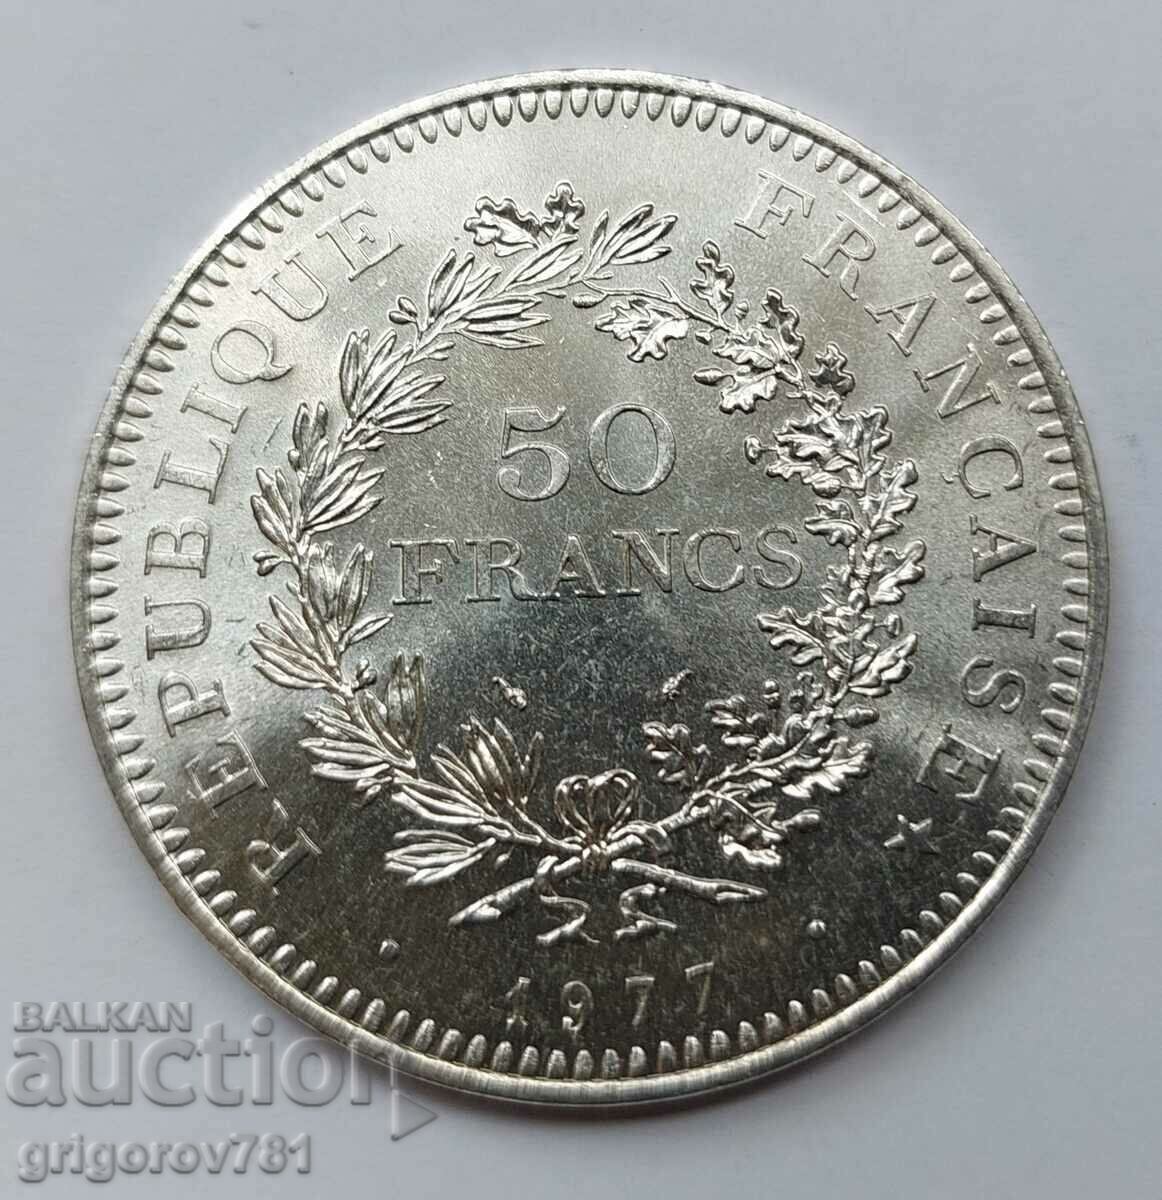 Ασήμι 50 φράγκων Γαλλία 1977 - Ασημένιο νόμισμα #46